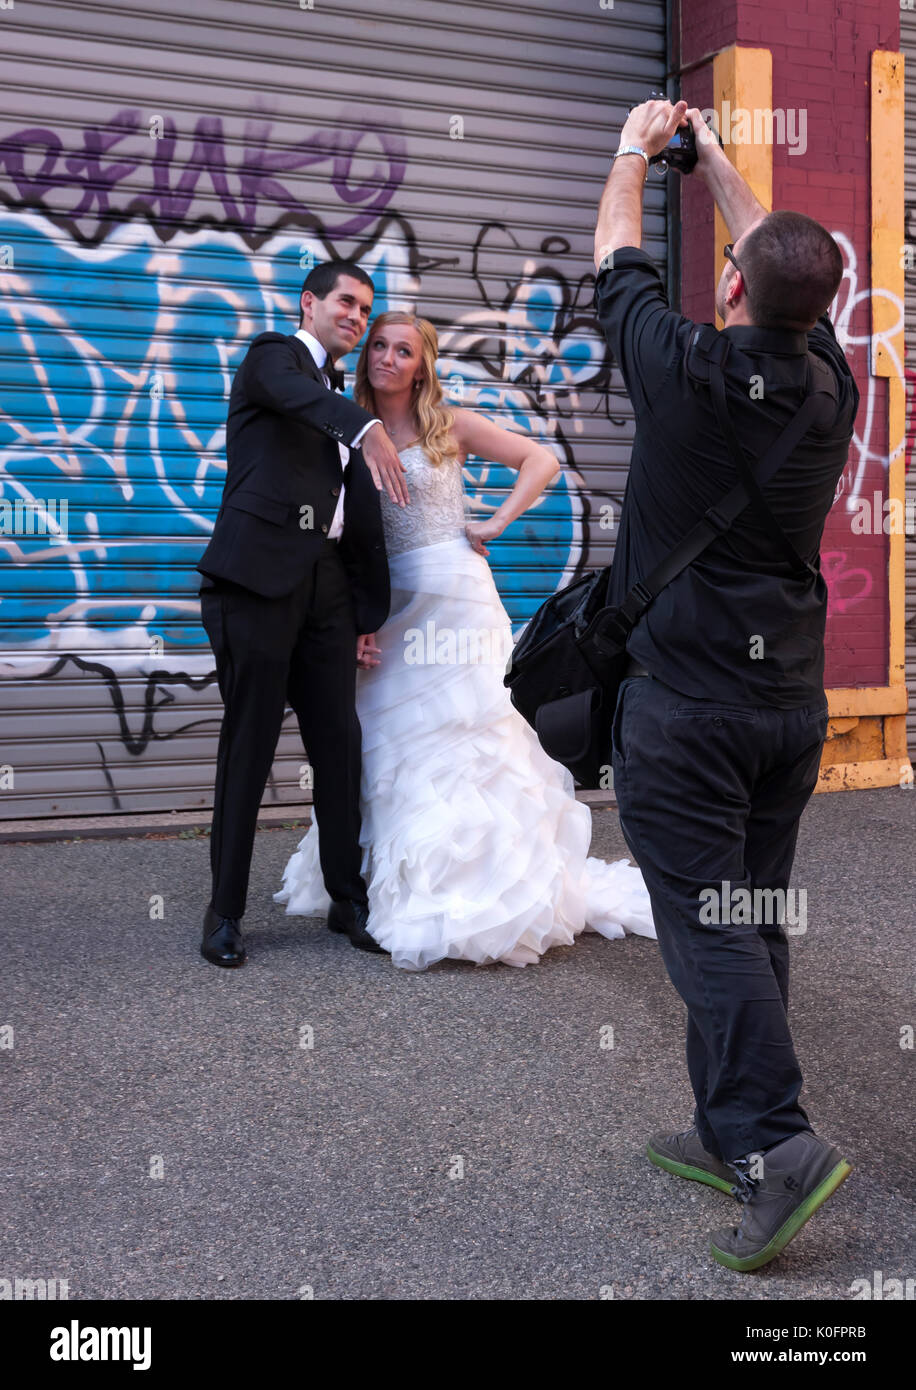 Un fotógrafo de capta la novia & posando y actuando cool contra un graffiti de fondo de stock -